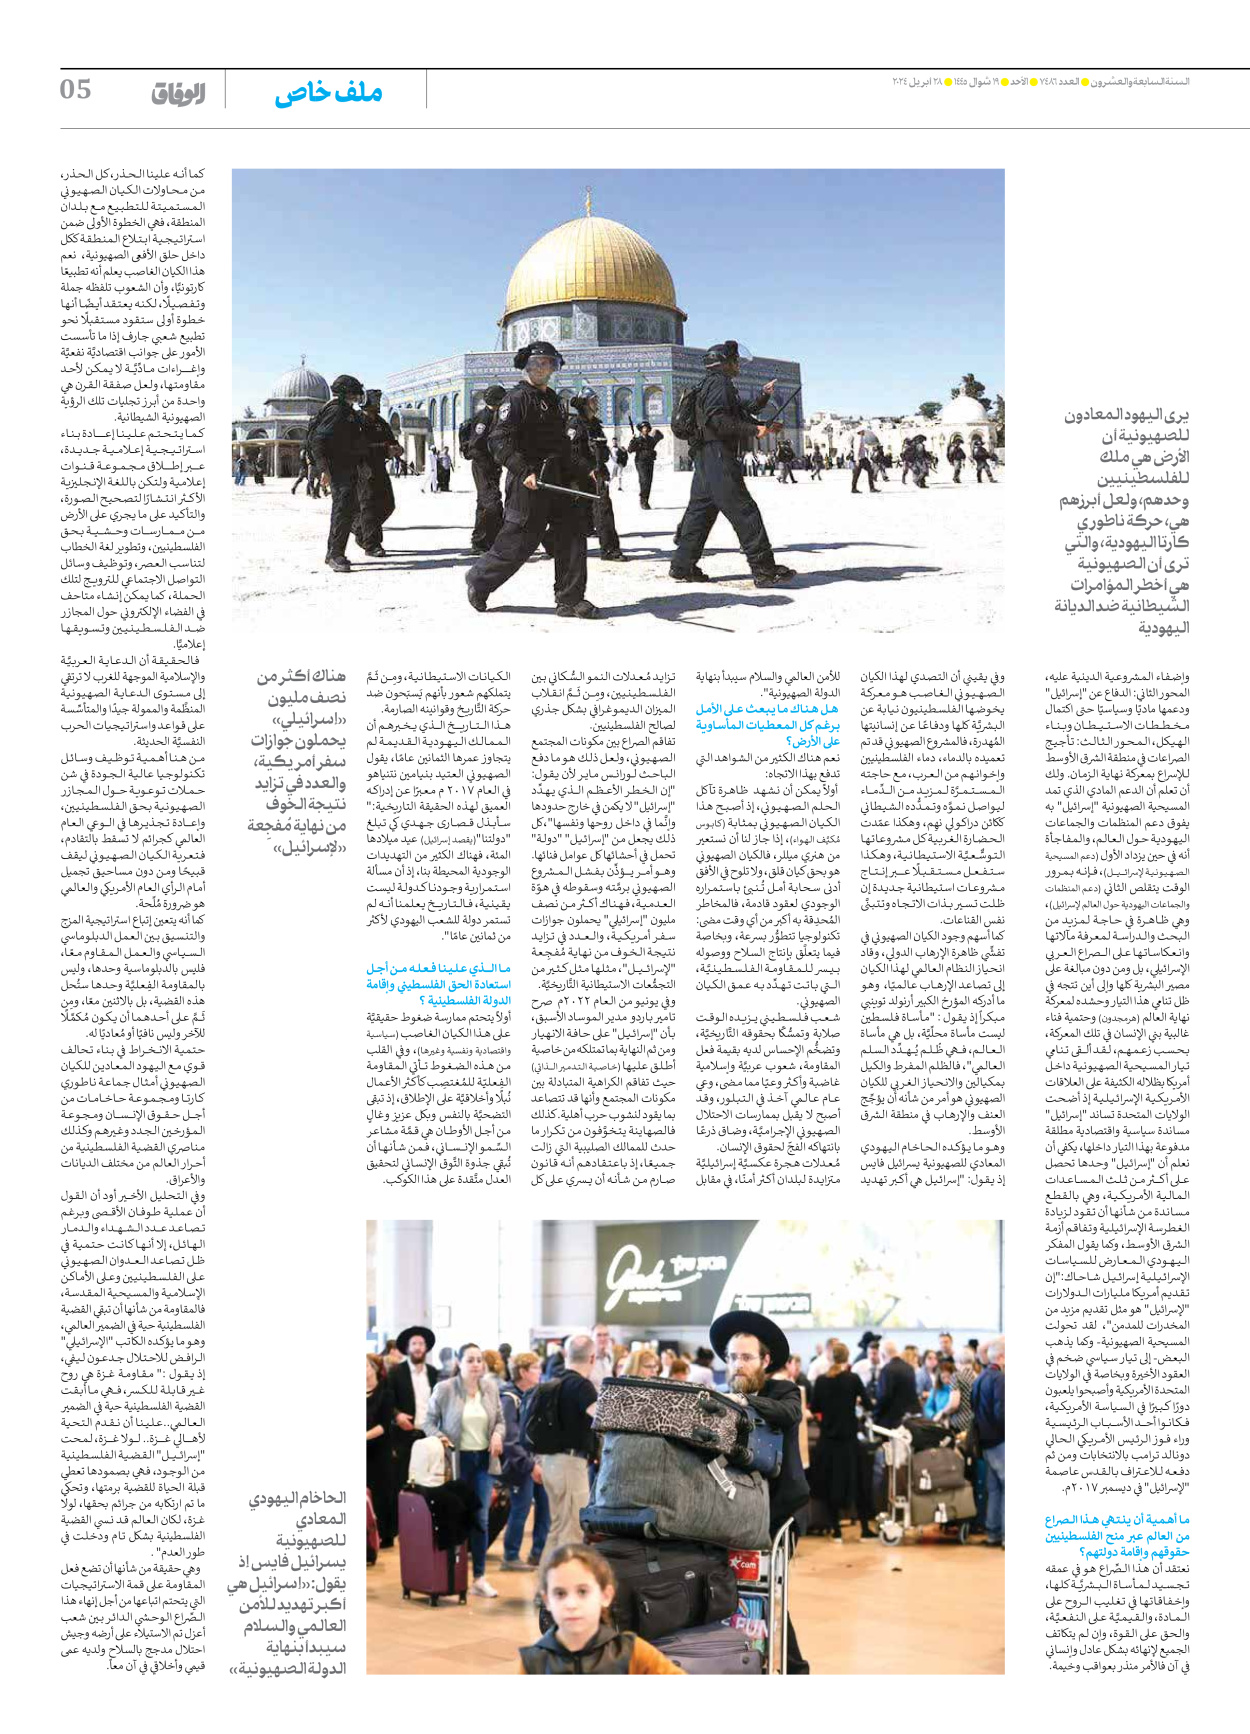 صحیفة ایران الدولیة الوفاق - العدد سبعة آلاف وأربعمائة وستة وثمانون - ٢٨ أبريل ٢٠٢٤ - الصفحة ٥